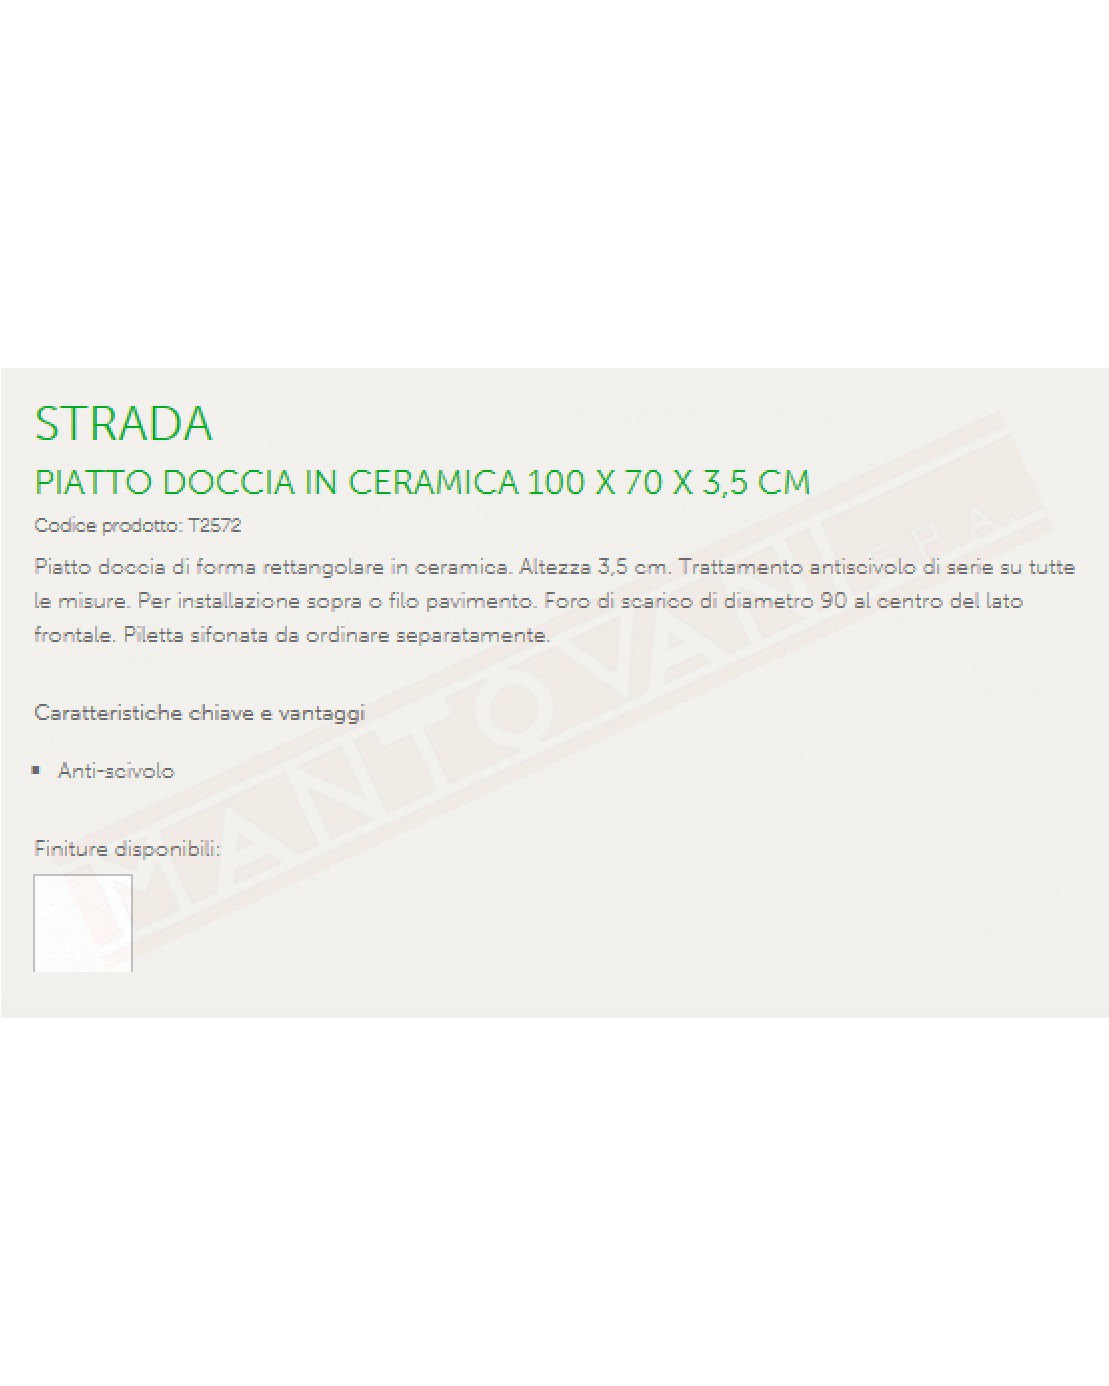 IDEAL STANDARD STRADA PIATTO DOCCIA 100X70 H 3.5 CM CON TRATTAMENTO ANTISCIVOLO FORO DIAMETRO 90 MM AL CENTRO DEL LATO FRONTALE